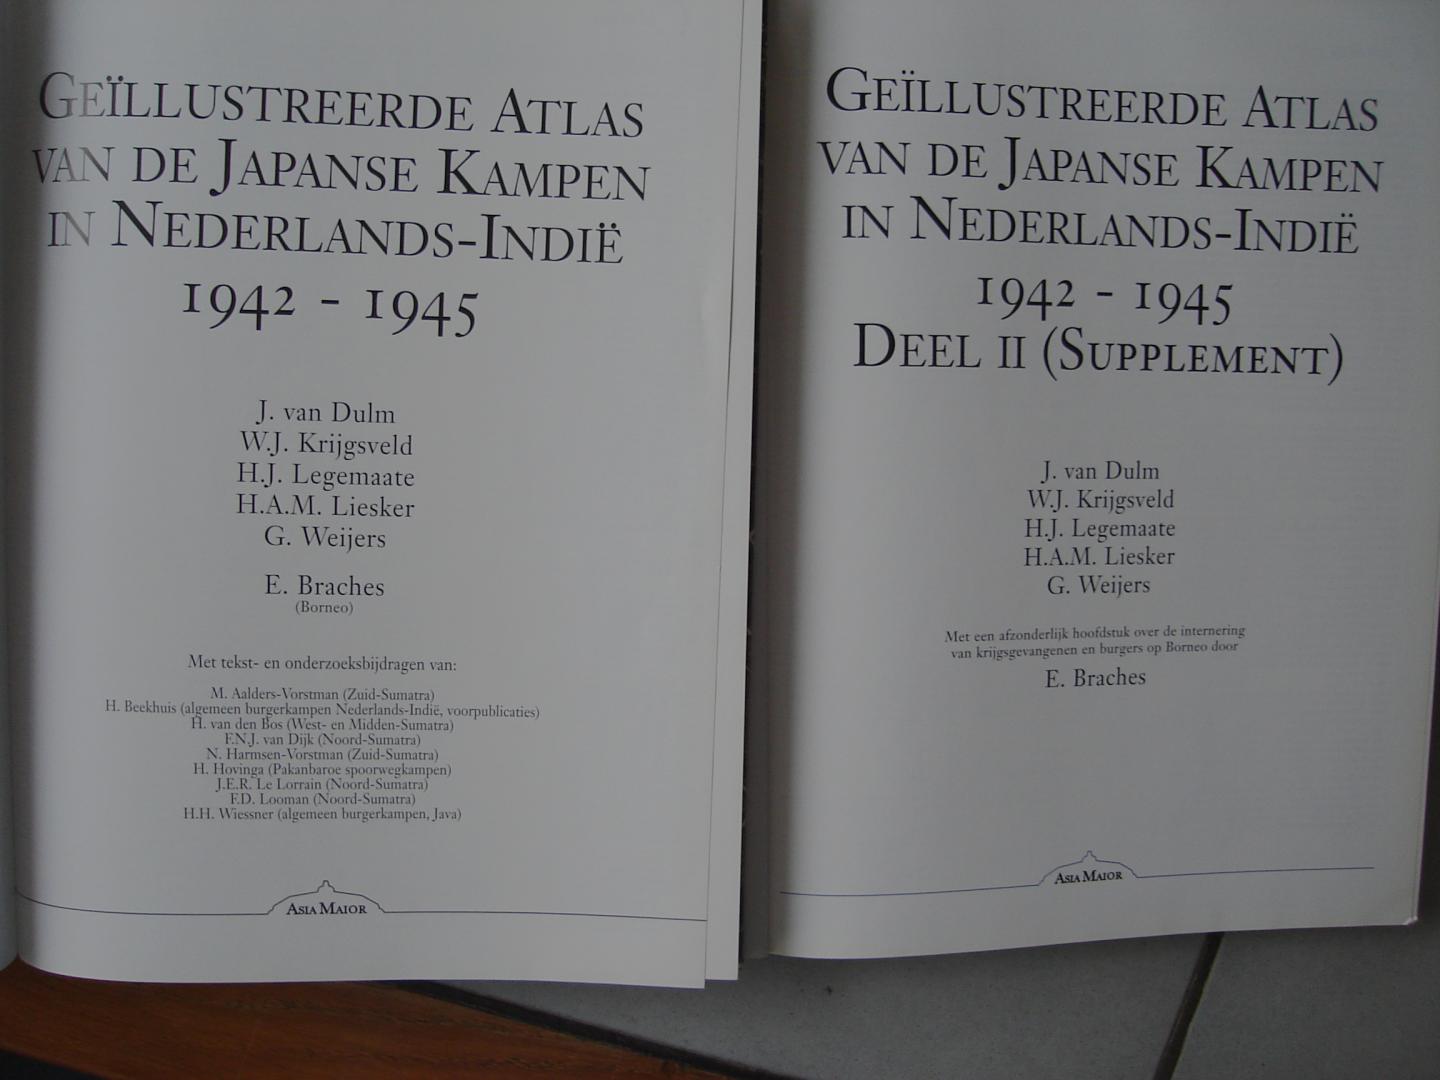 J.van Dulm - W.j. Krijgsveld - H.J. Legemaate - H.A.M. Liesker - G. Weijers en E. Braches. - Geillustreerde Atlas van de Japanse kampen in nederlands - Indie 1942 - 1945. deel 1 en deel 2 is Supplement.